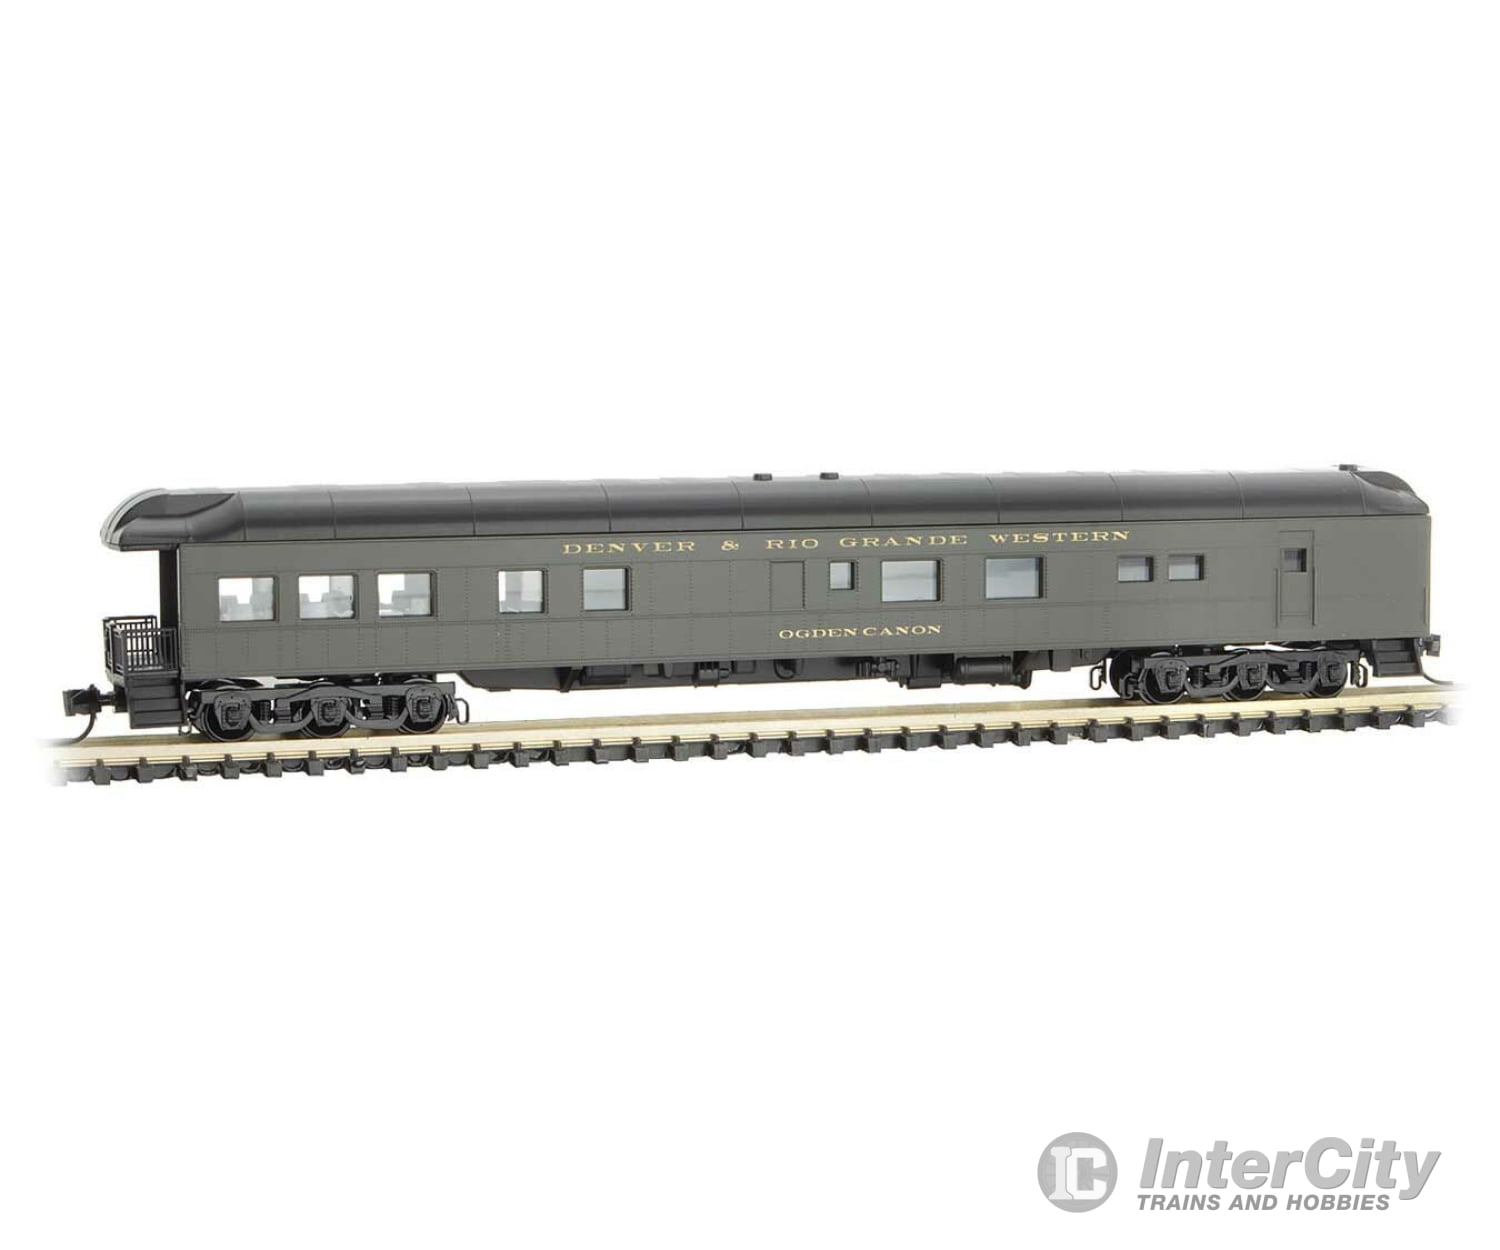 Micro Trains N 14400810 Scale Heavyweight Passenger Car D&Rgw #632 Cars